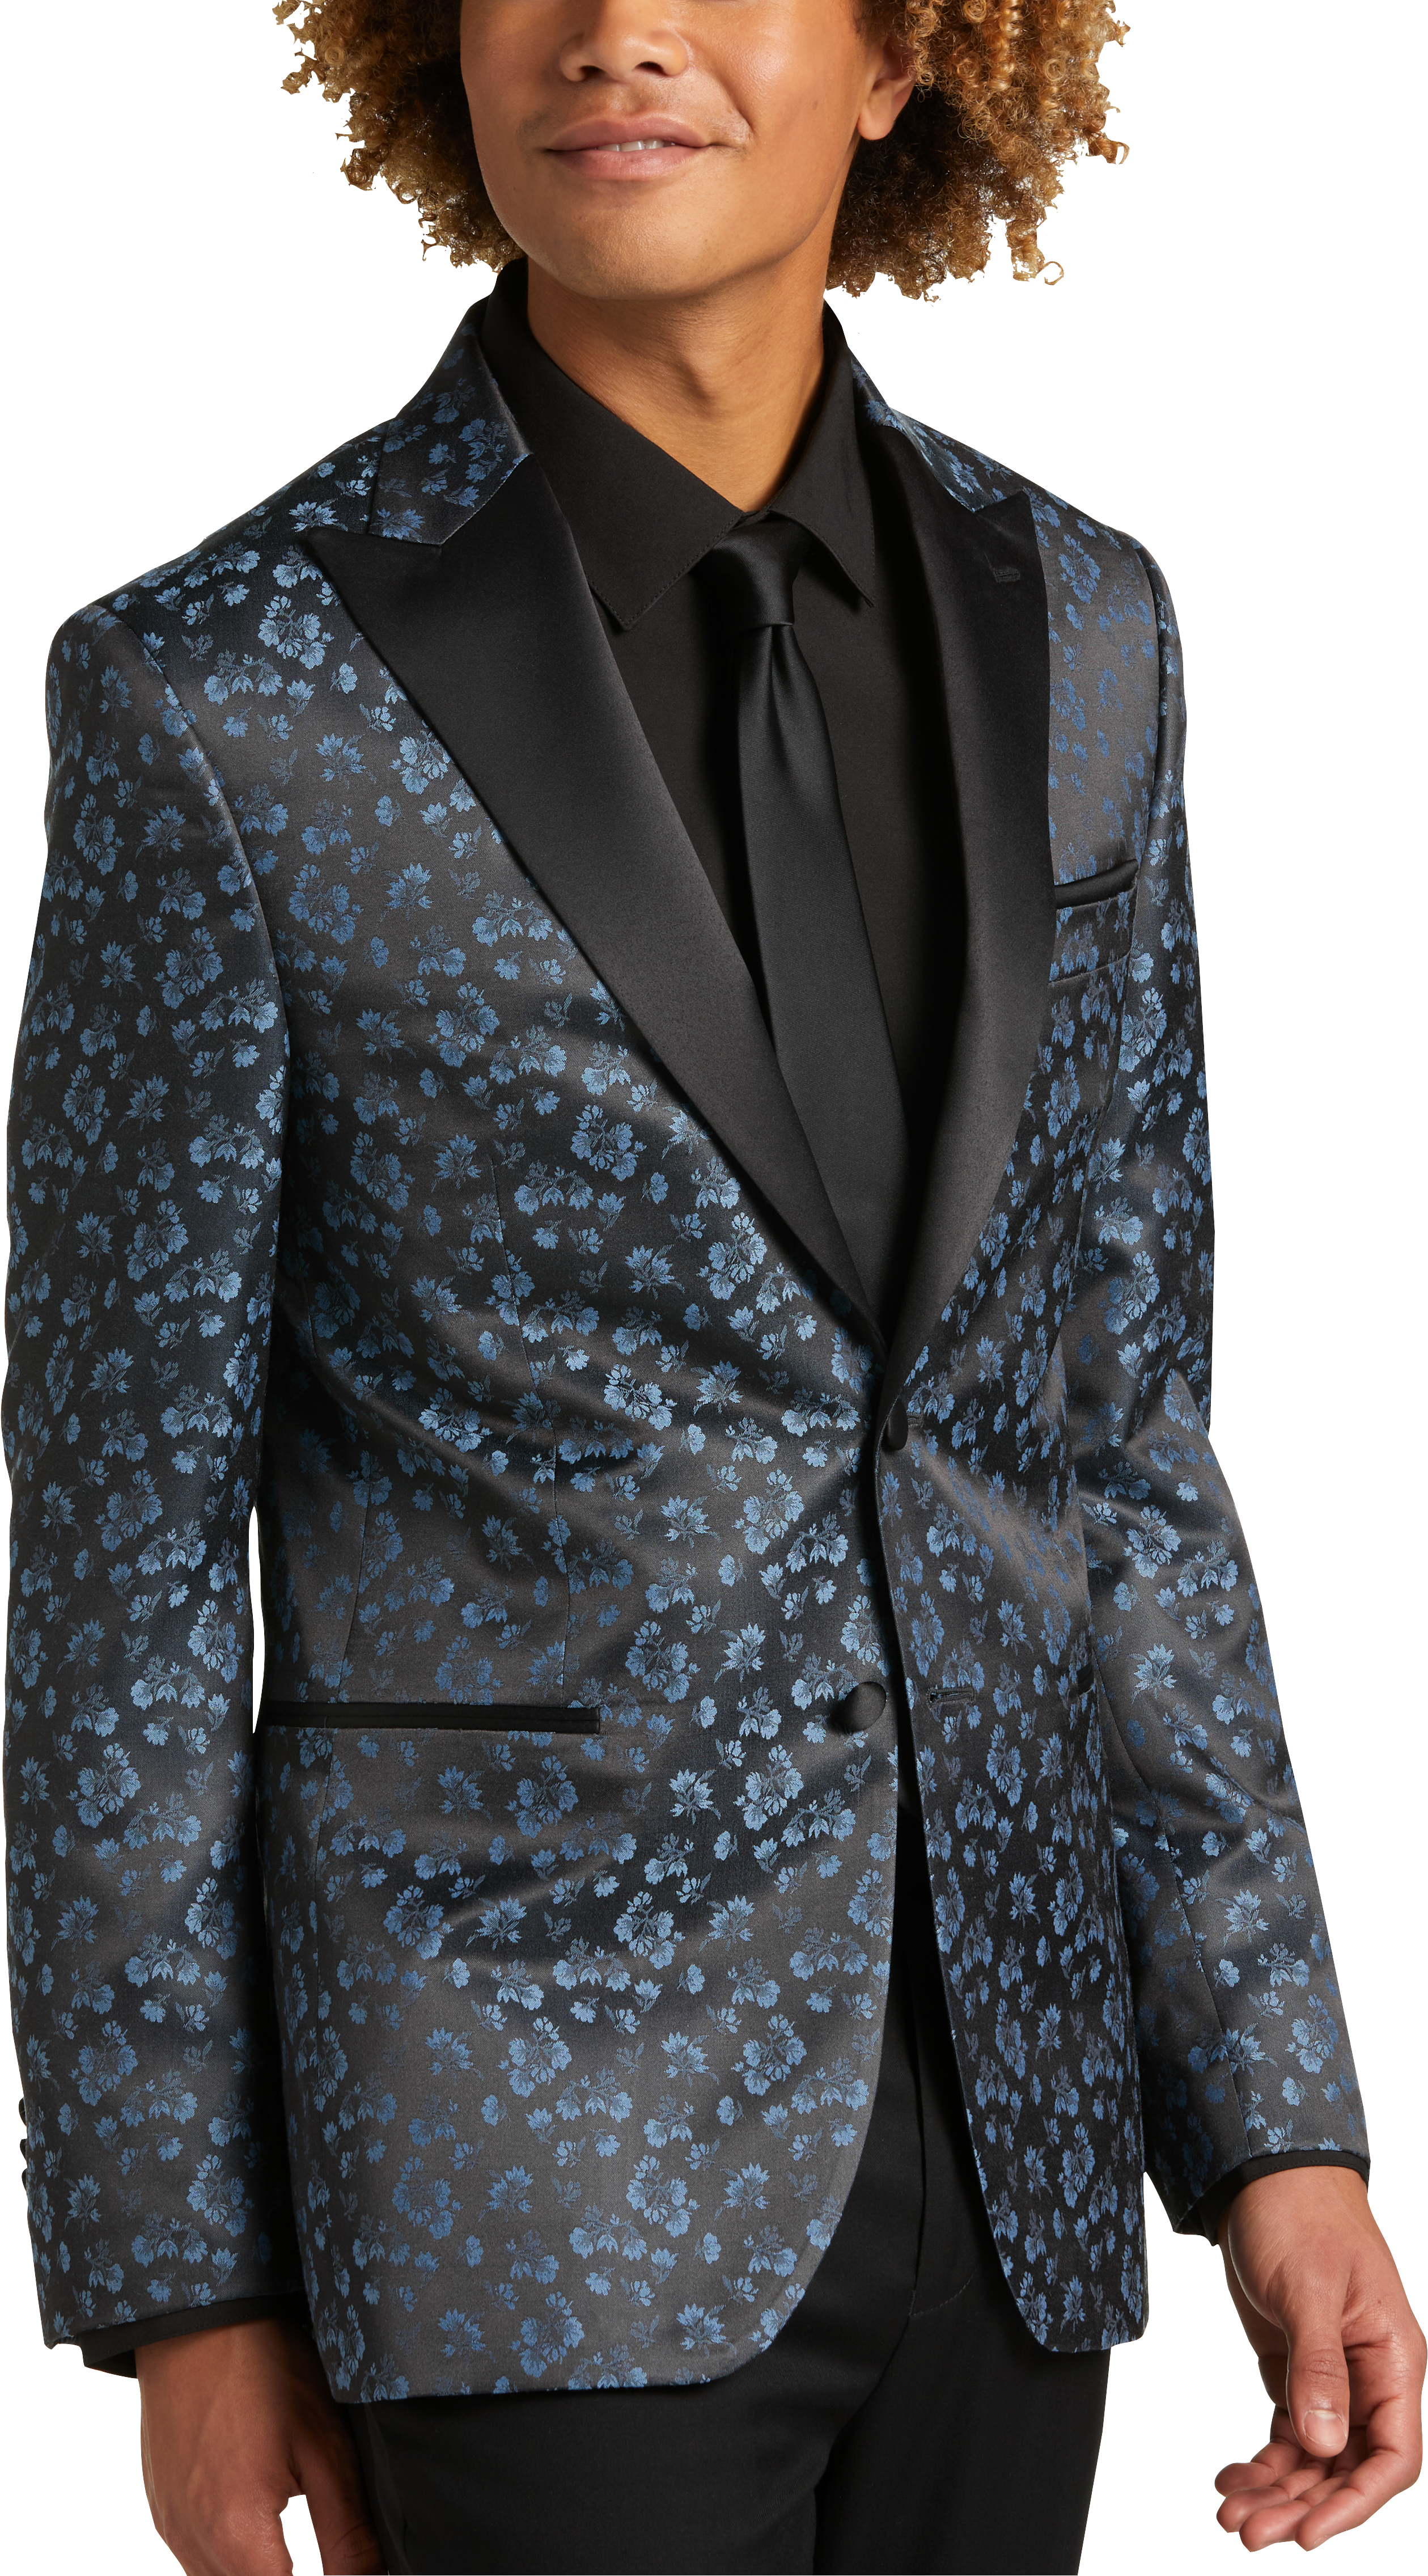 Egara Slim Fit Formal Dinner Jacket, Blue Floral - Men's Featured | Men ...